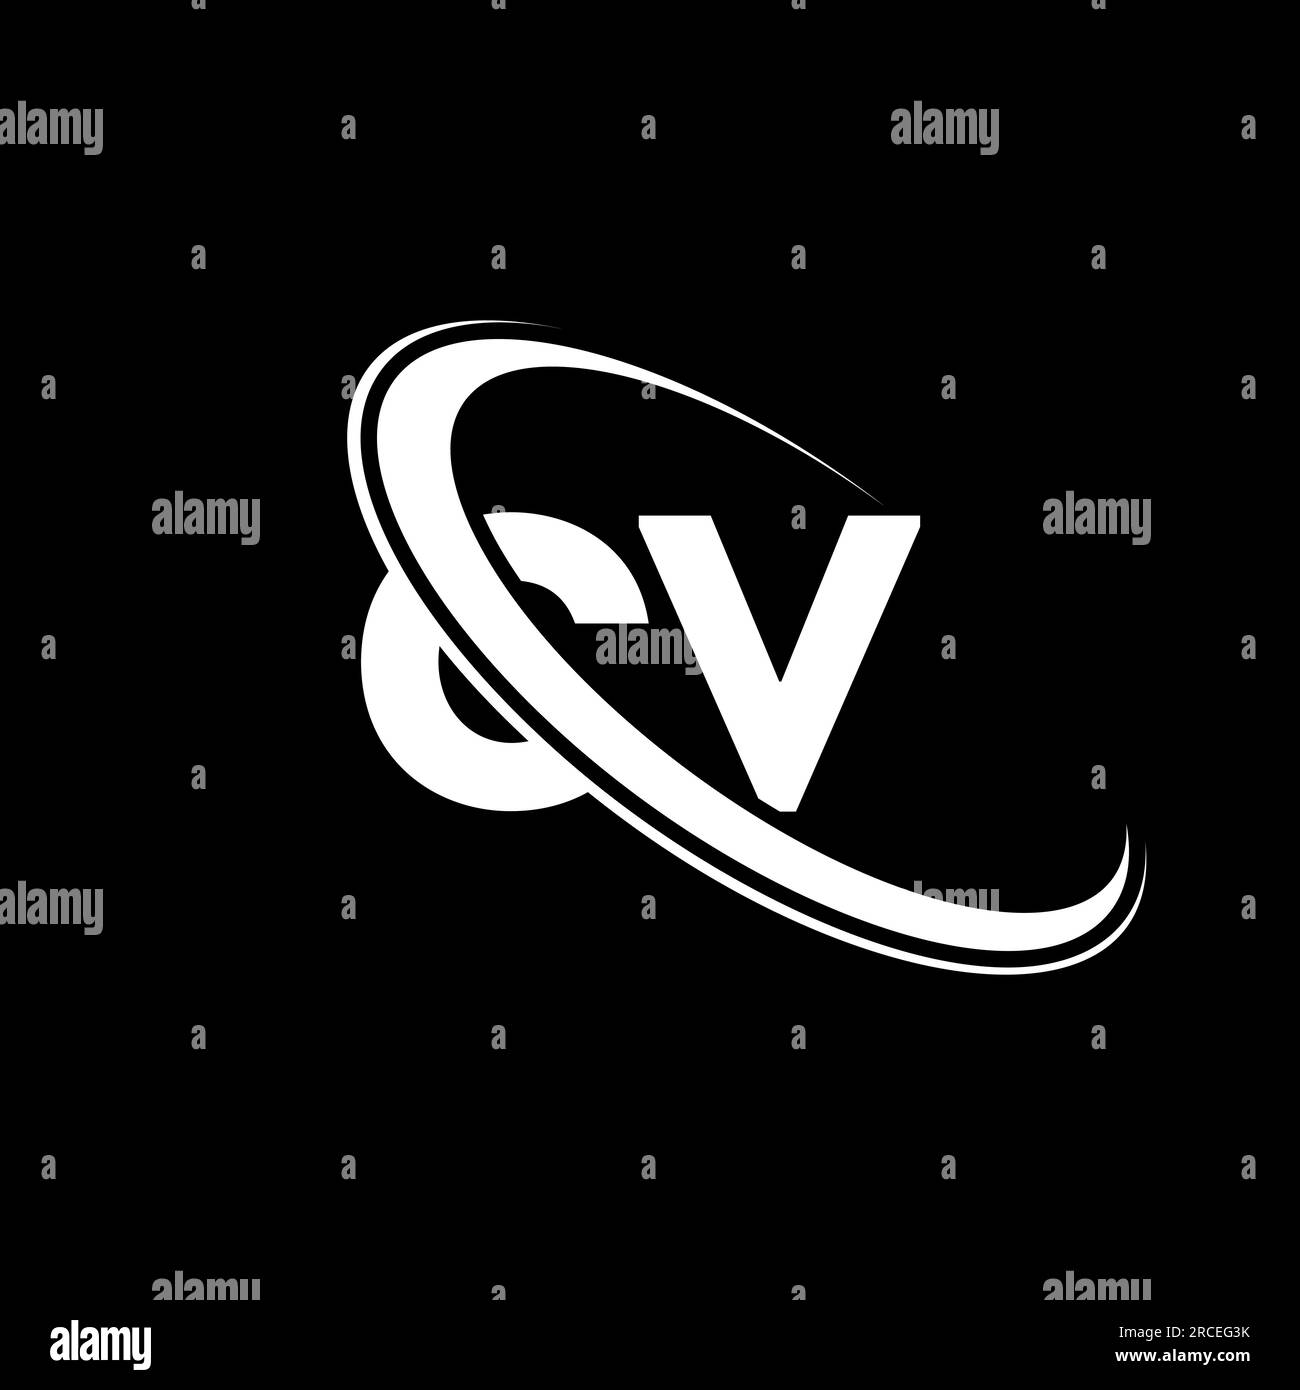 CV logo. C V design. White CV letter. CV/C V letter logo design. Initial letter CV linked circle uppercase monogram logo. Stock Vector